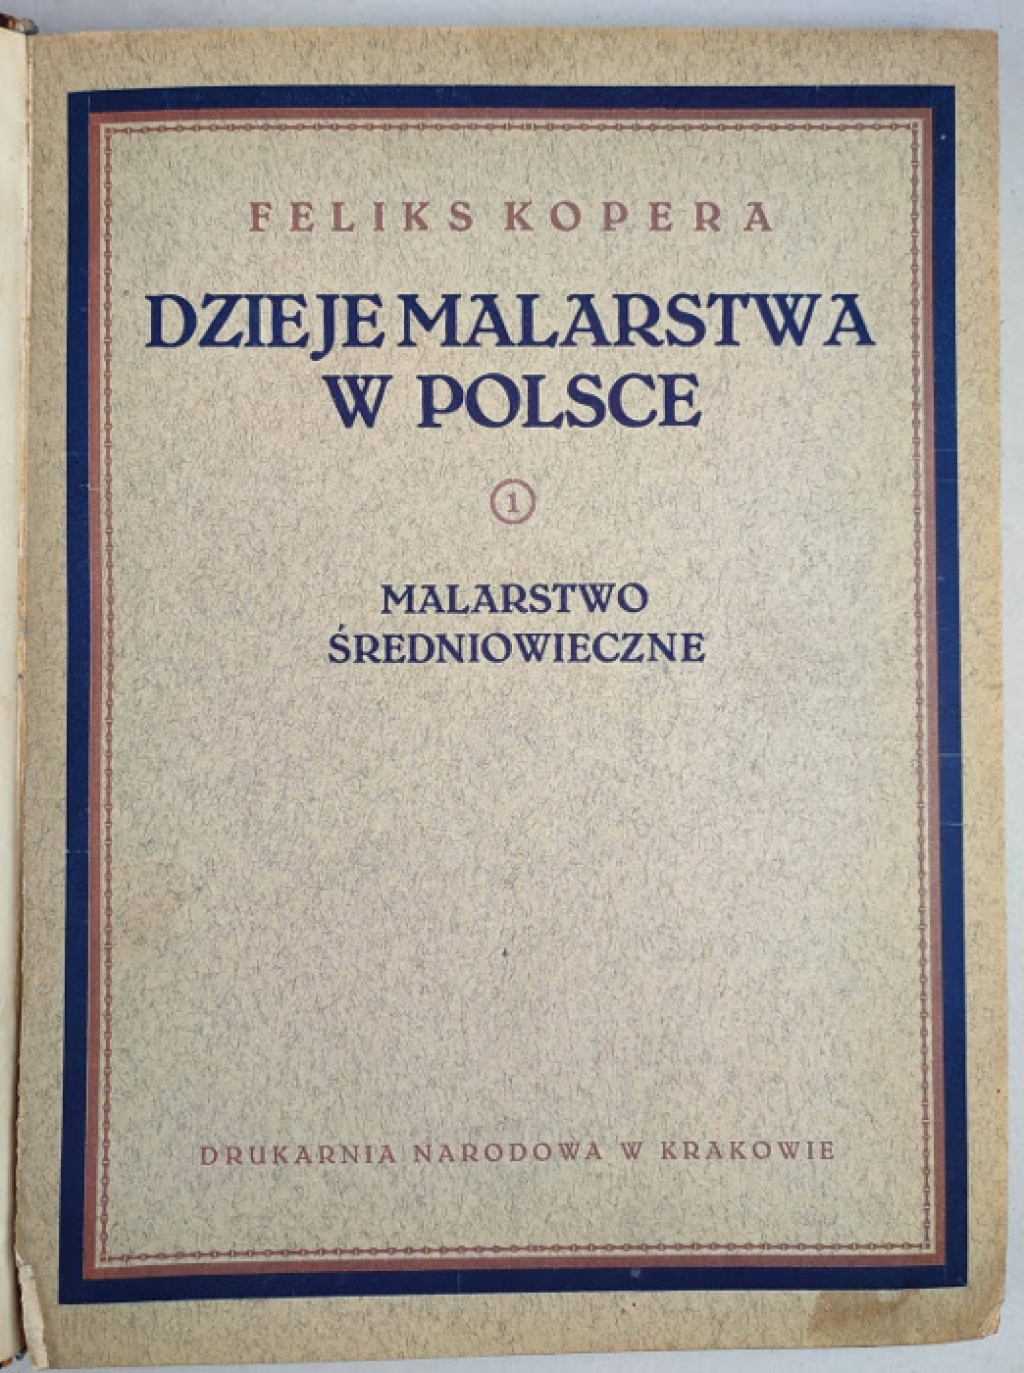 Dzieje malarstwa w Polsce, t. I-III